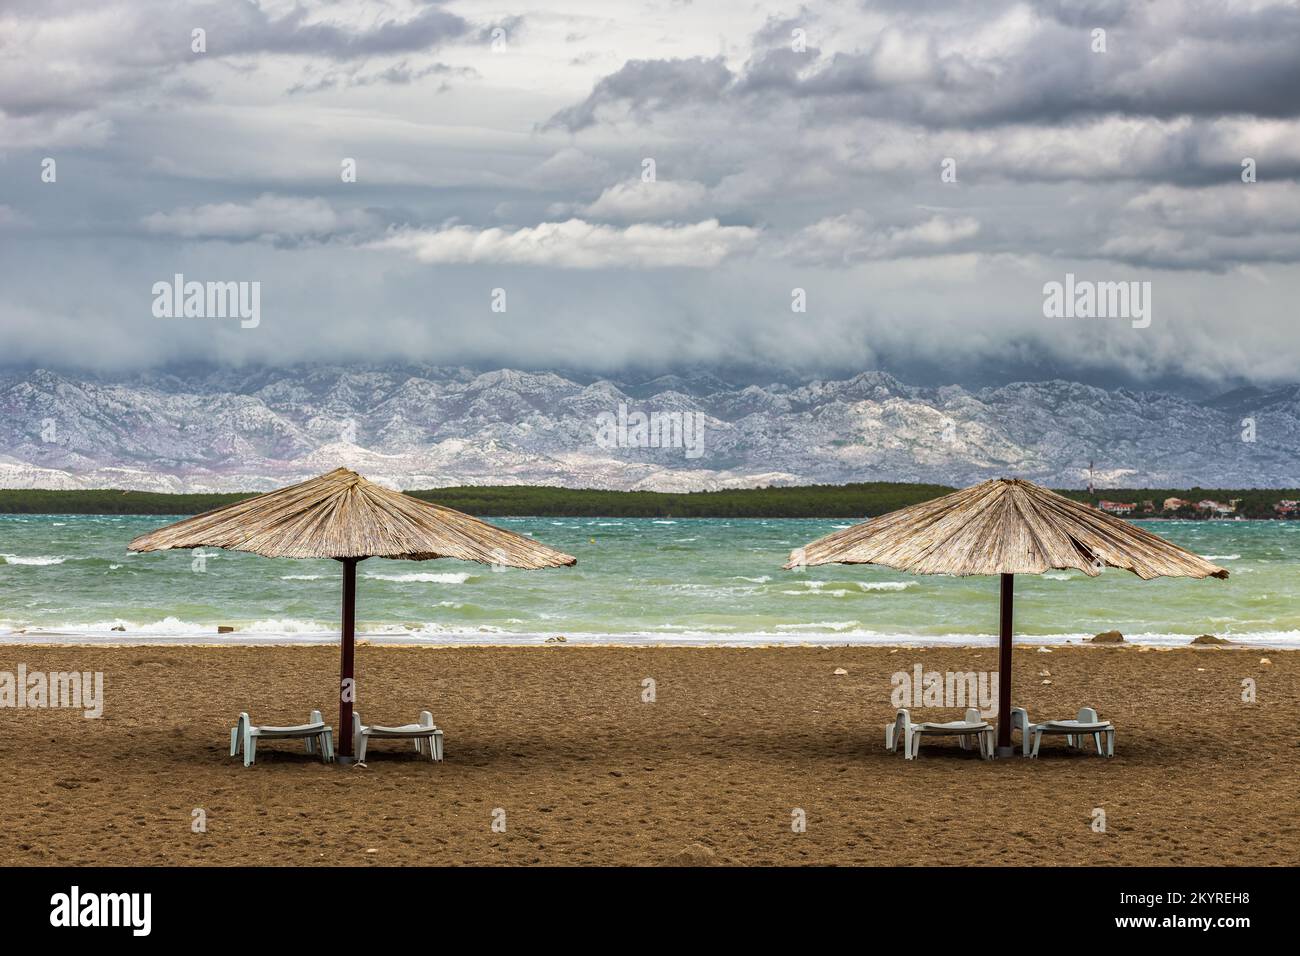 Nin, Kroatien - zwei Schilf-Sonnenschirme am leeren Queen's Beach in der mediterranen Stadt Nin am Ende des Sommers mit Velebit-Bergen im Hintergrund Stockfoto